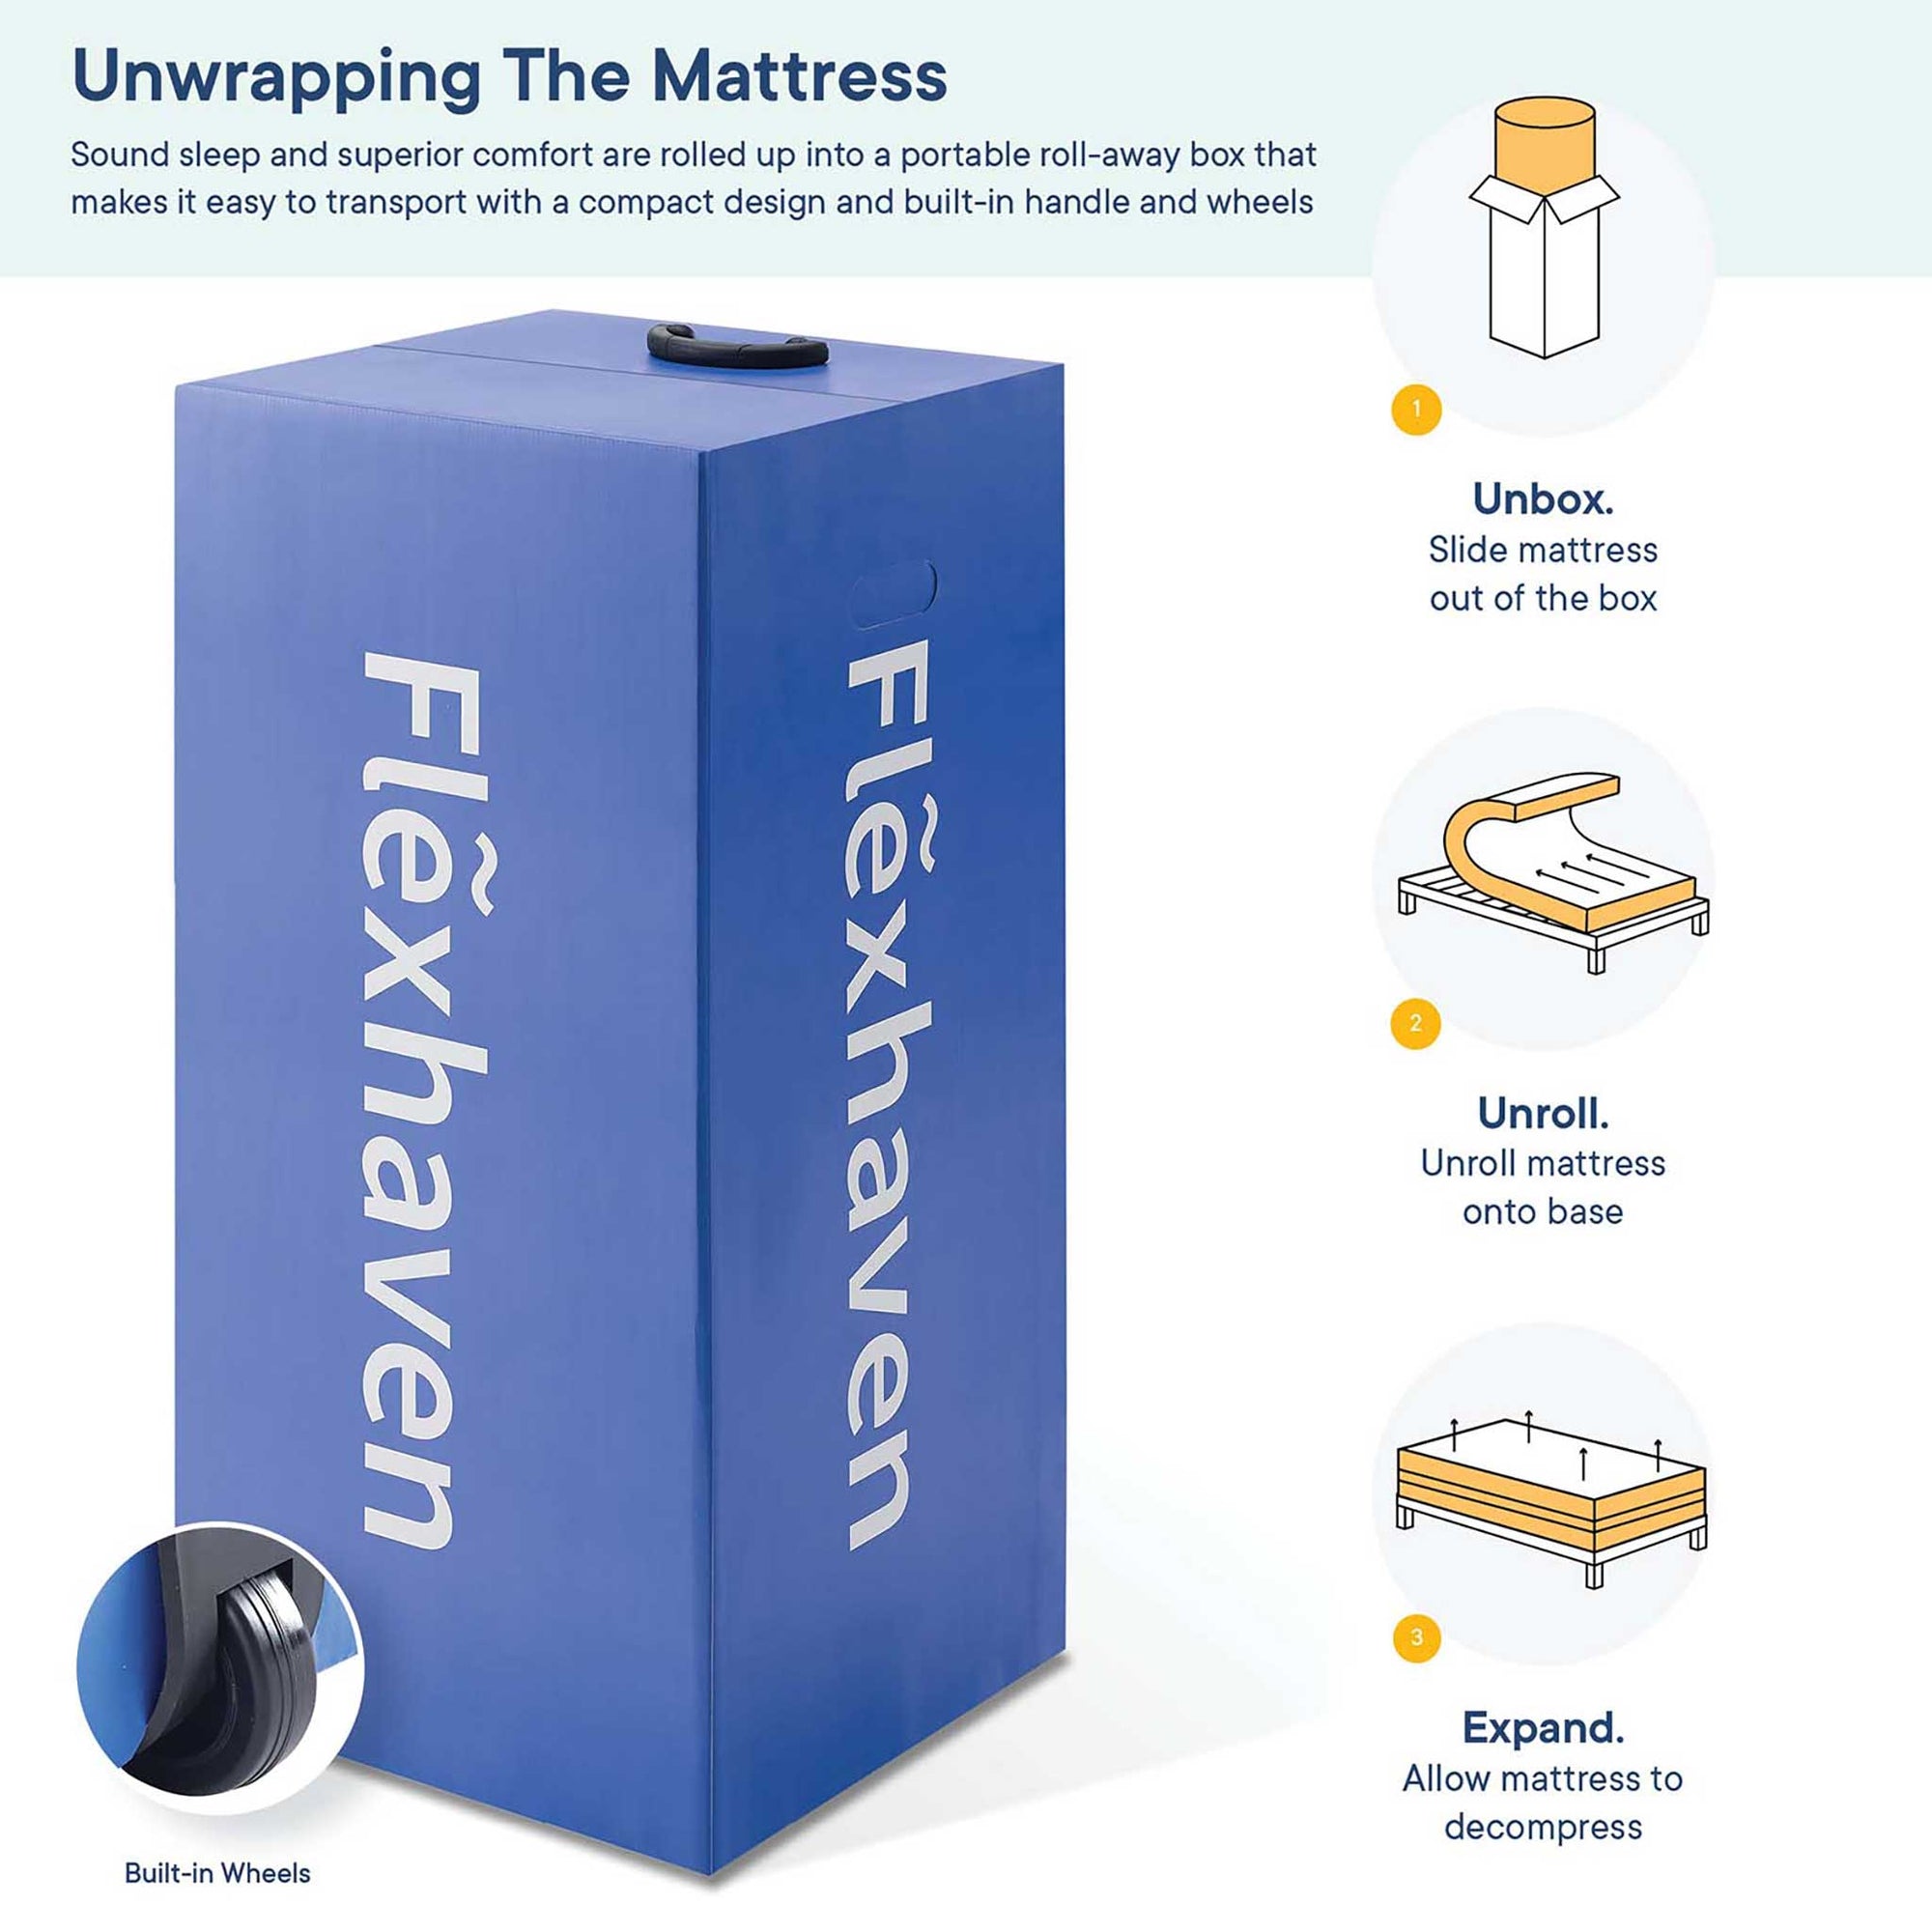 Flexhaven 10" Pressure-Relief Memory Foam Mattress White